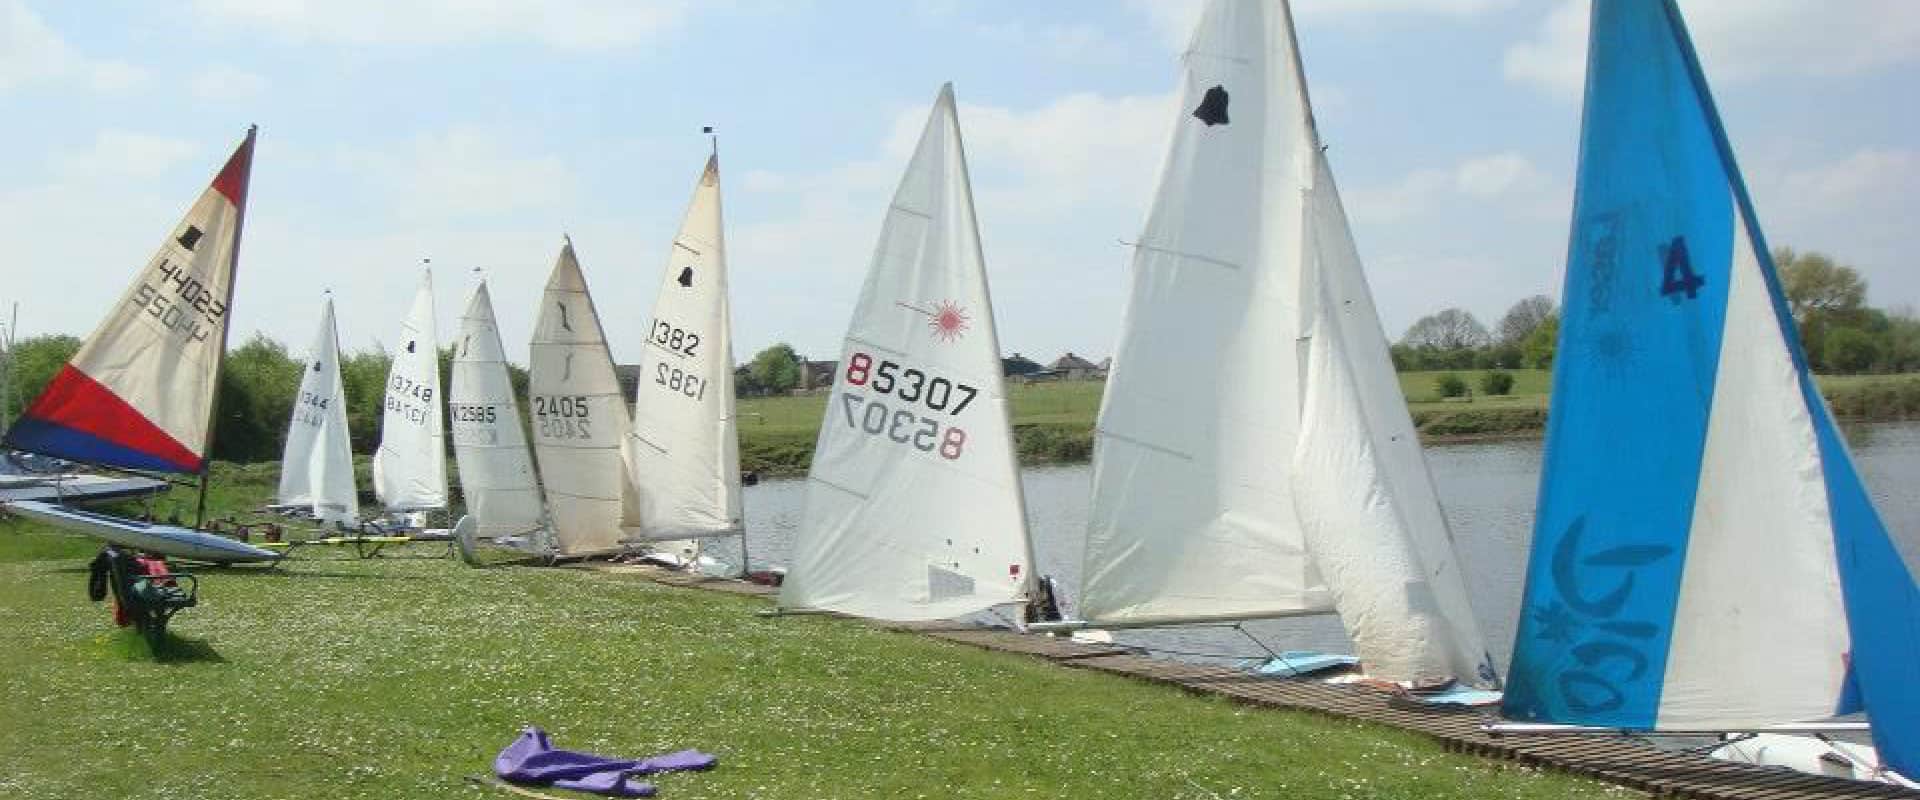 Aldridge Sailing Club in UK